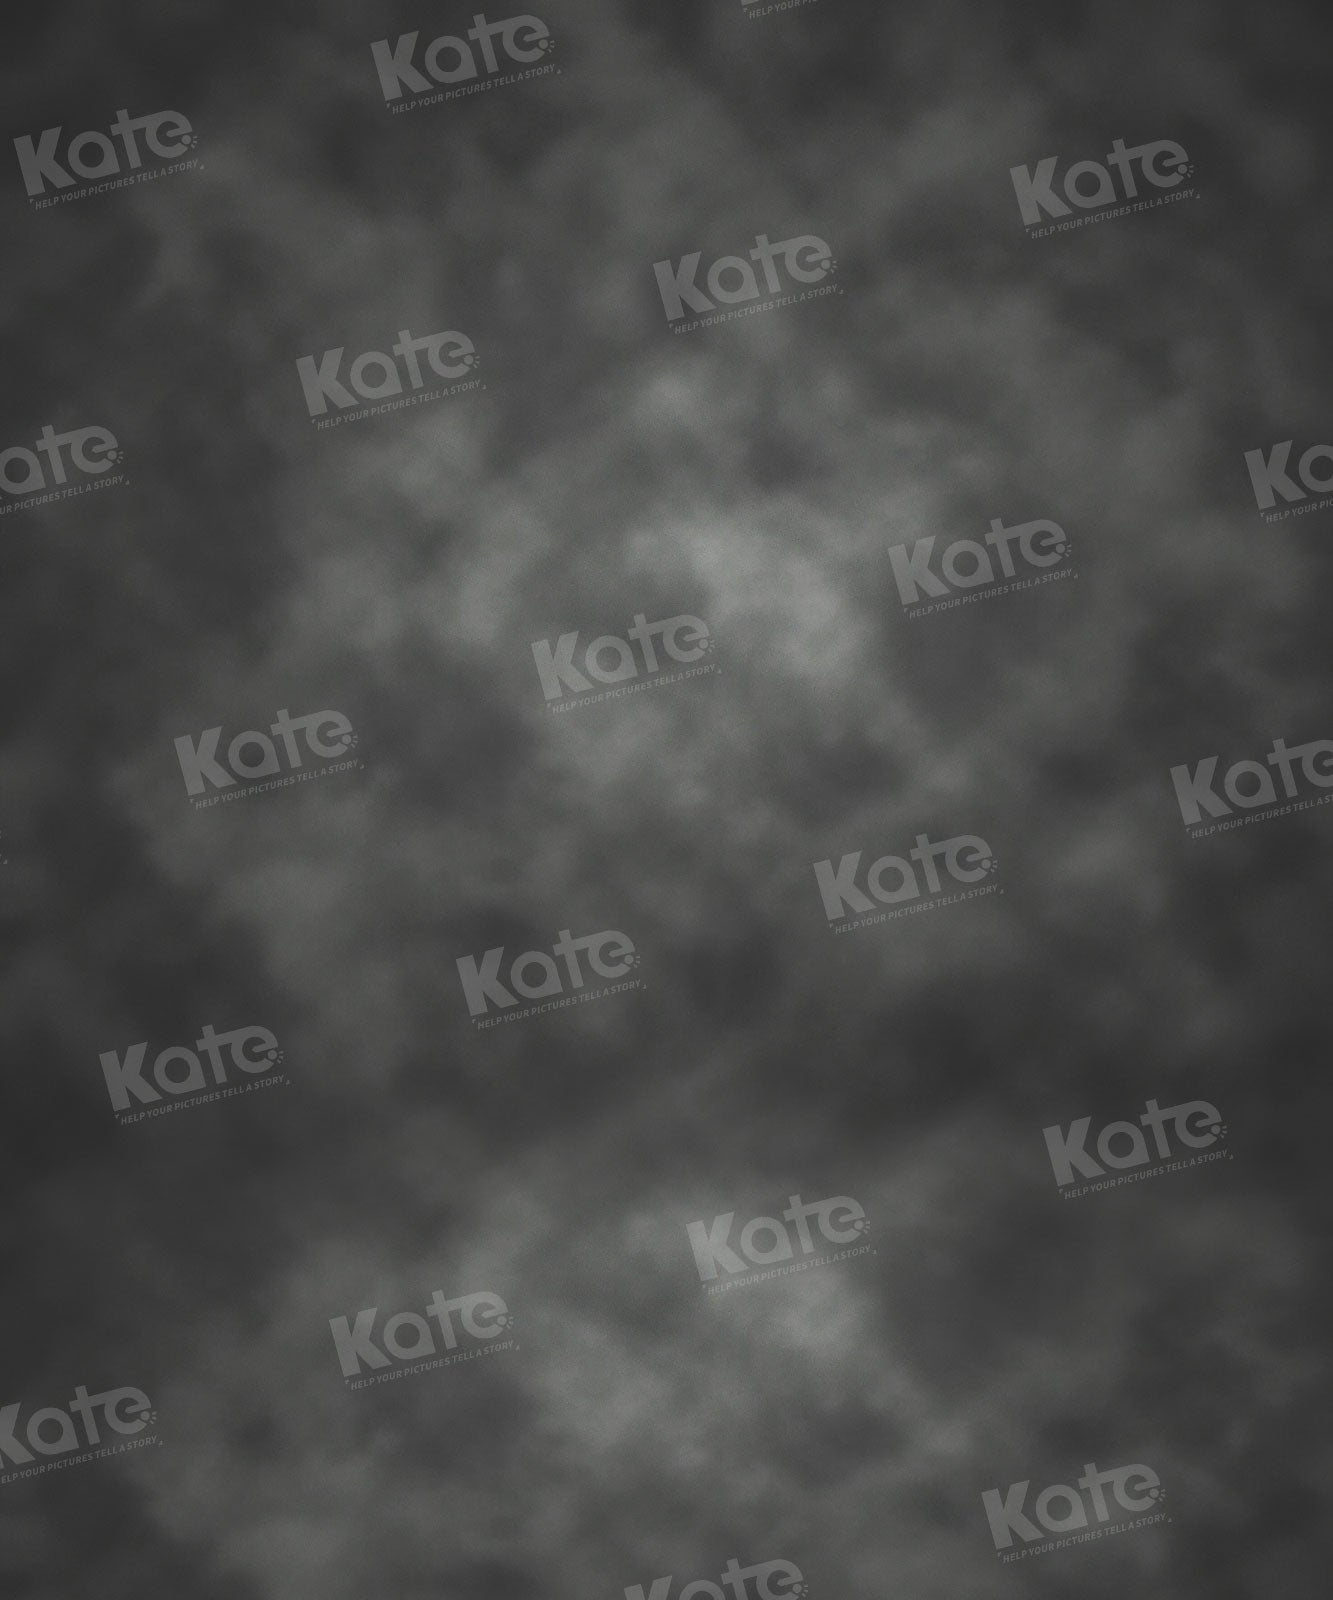 Kate Abstrakt Rauch Grau Textur Hintergrund für Fotografie